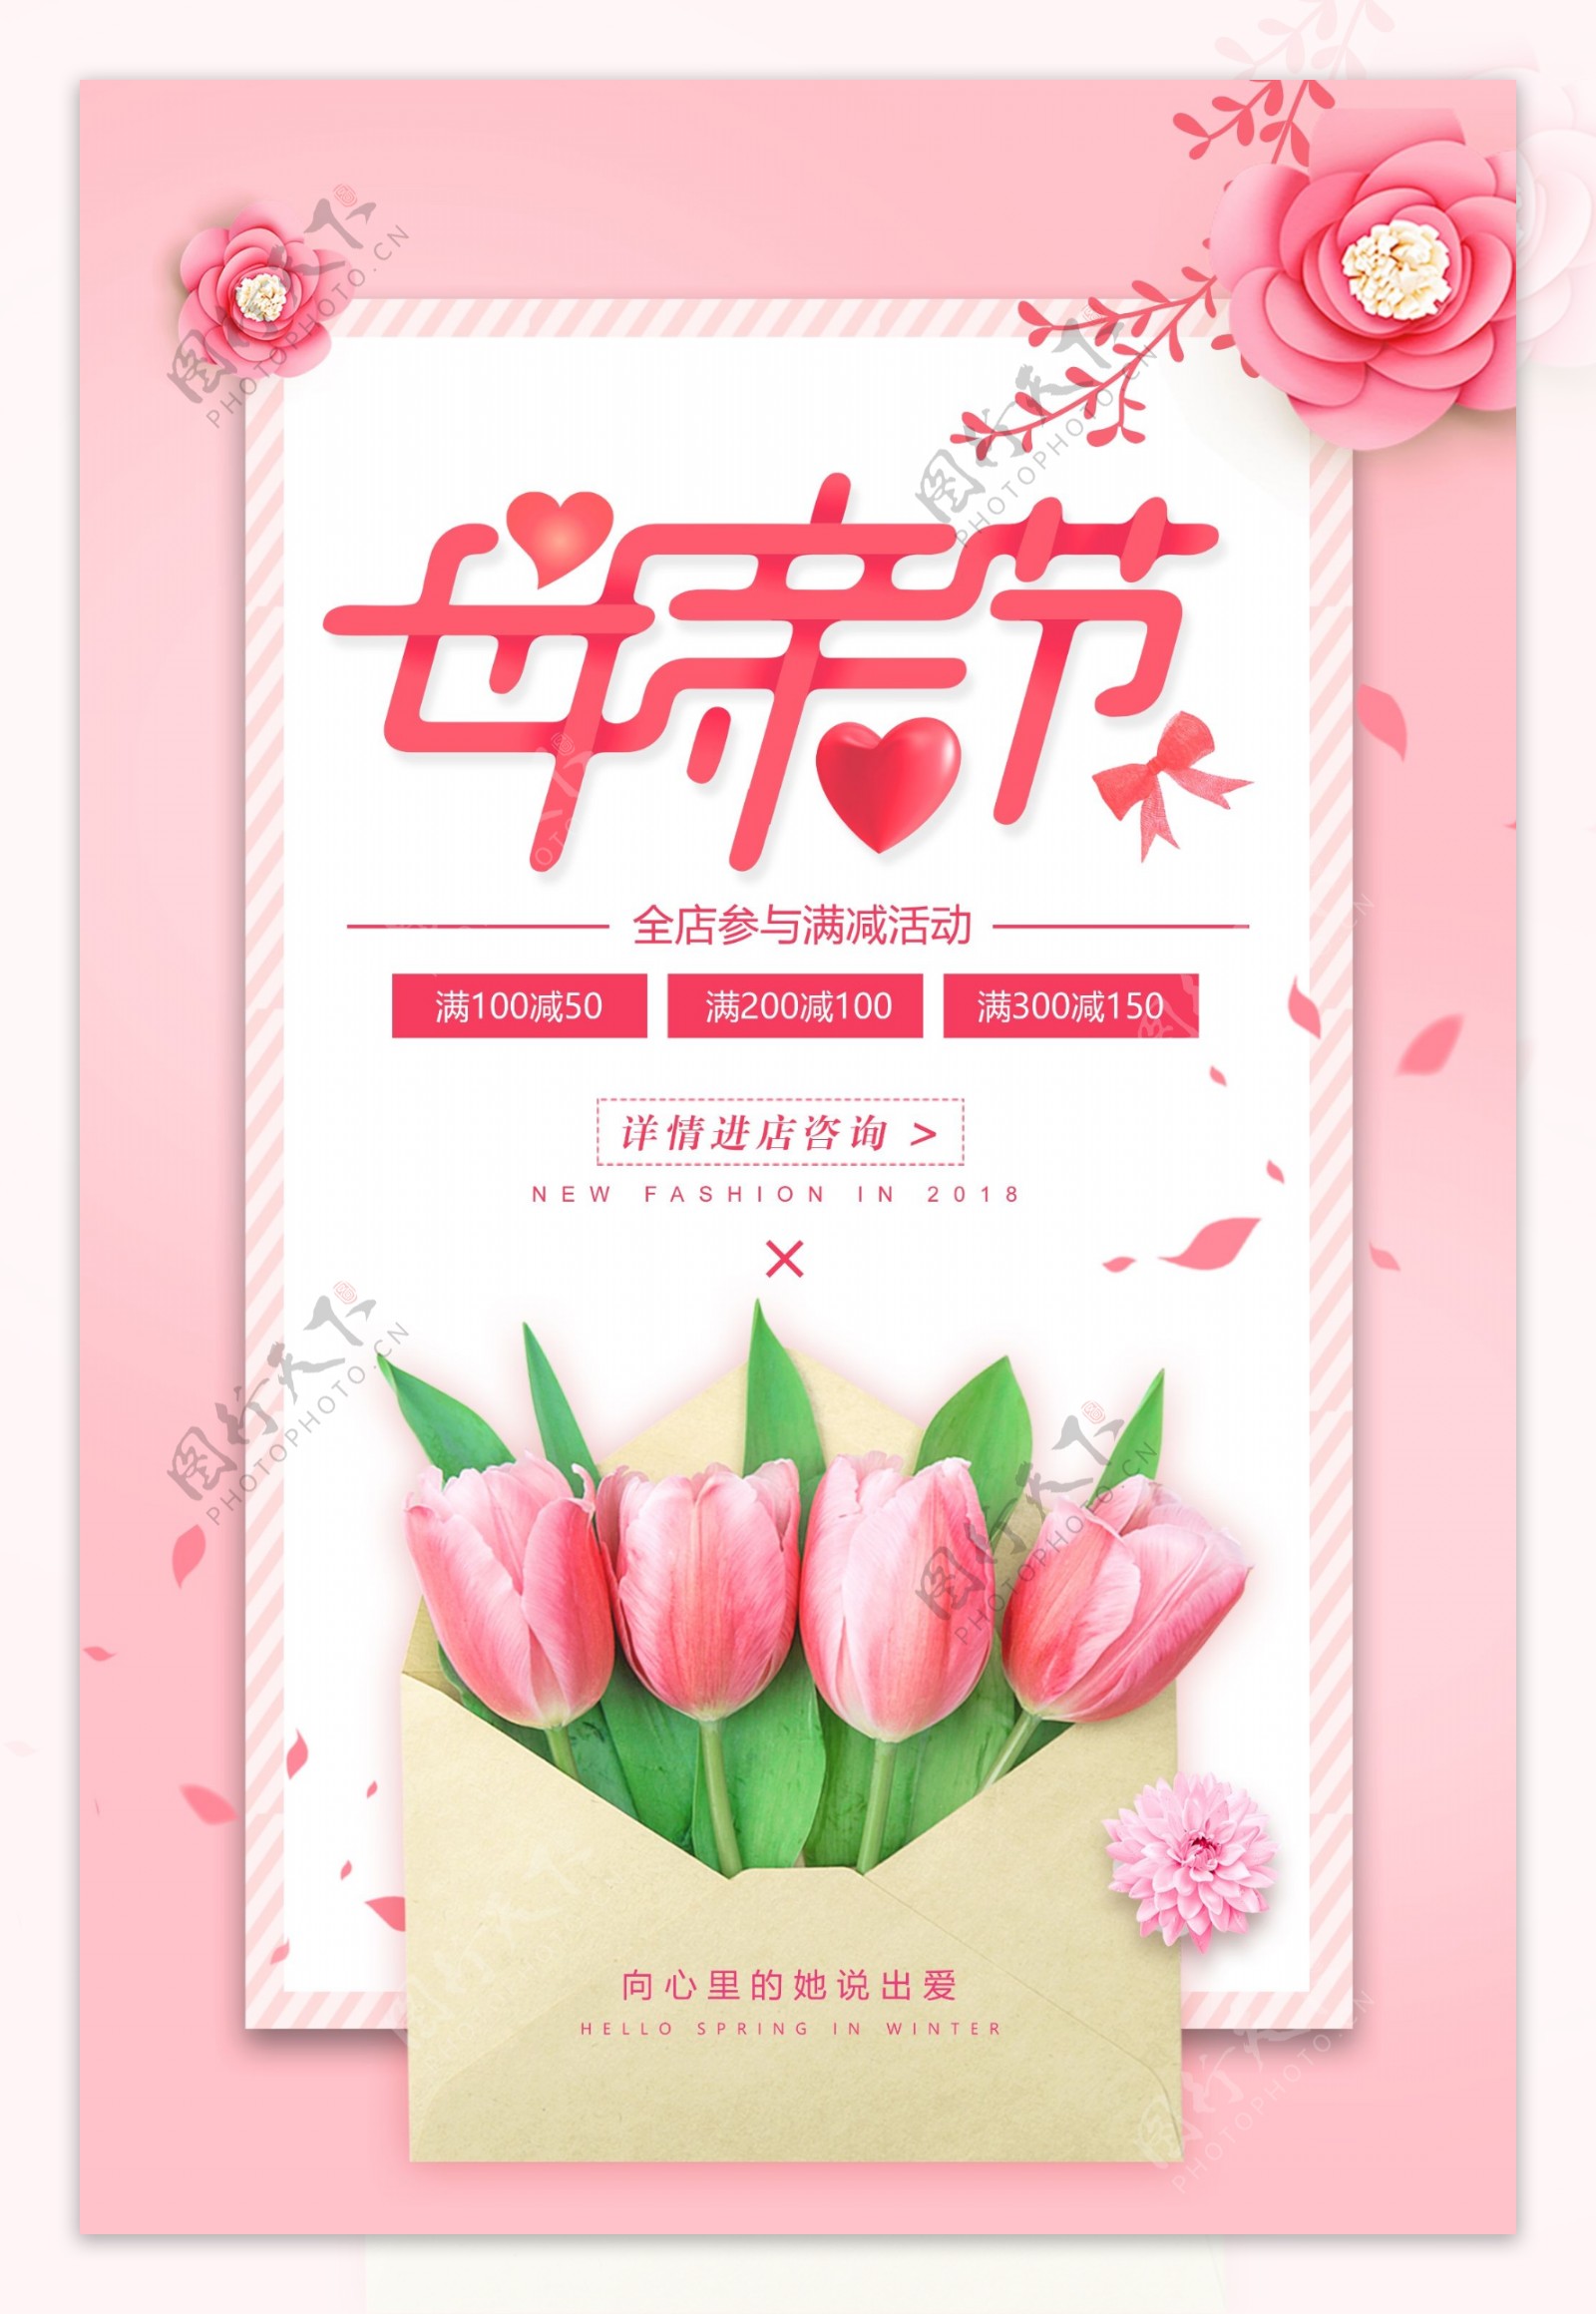 清新粉色唯美母亲节促销海报